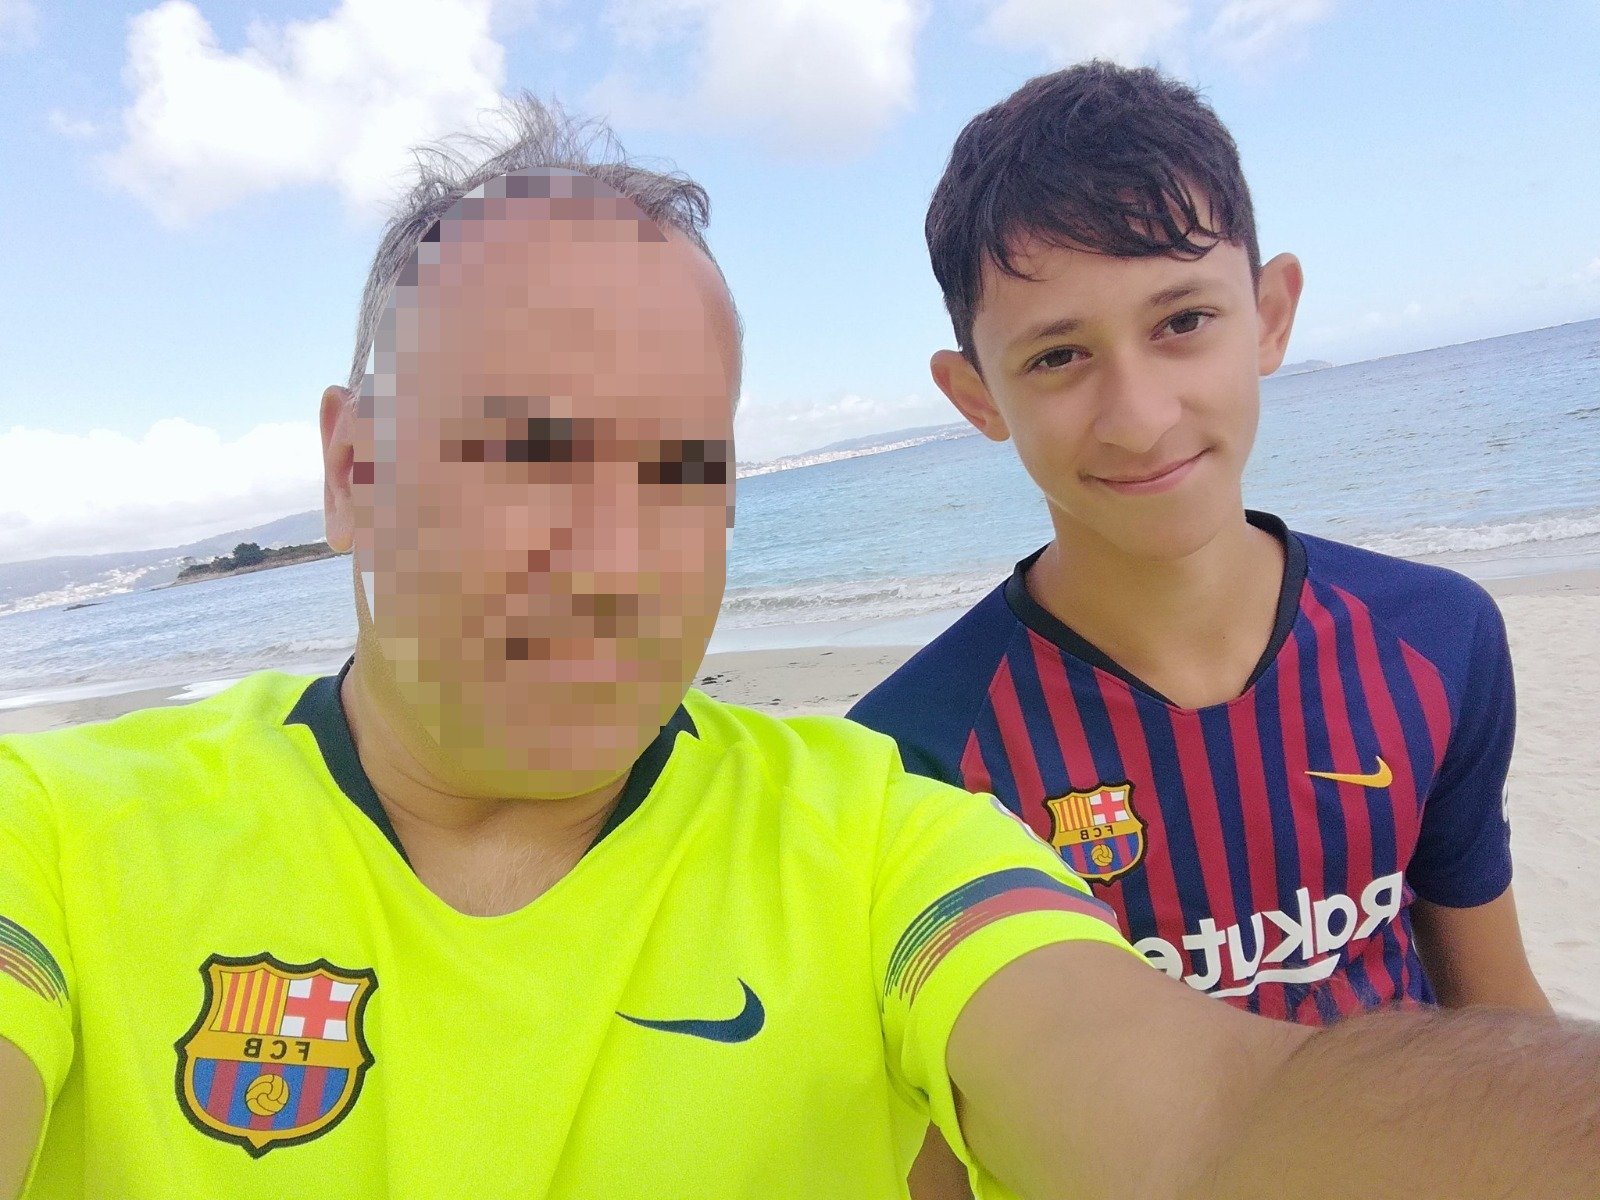 ORGULL CULER Famós presentador de TV i el seu fill, avui amb samarreta del Barça